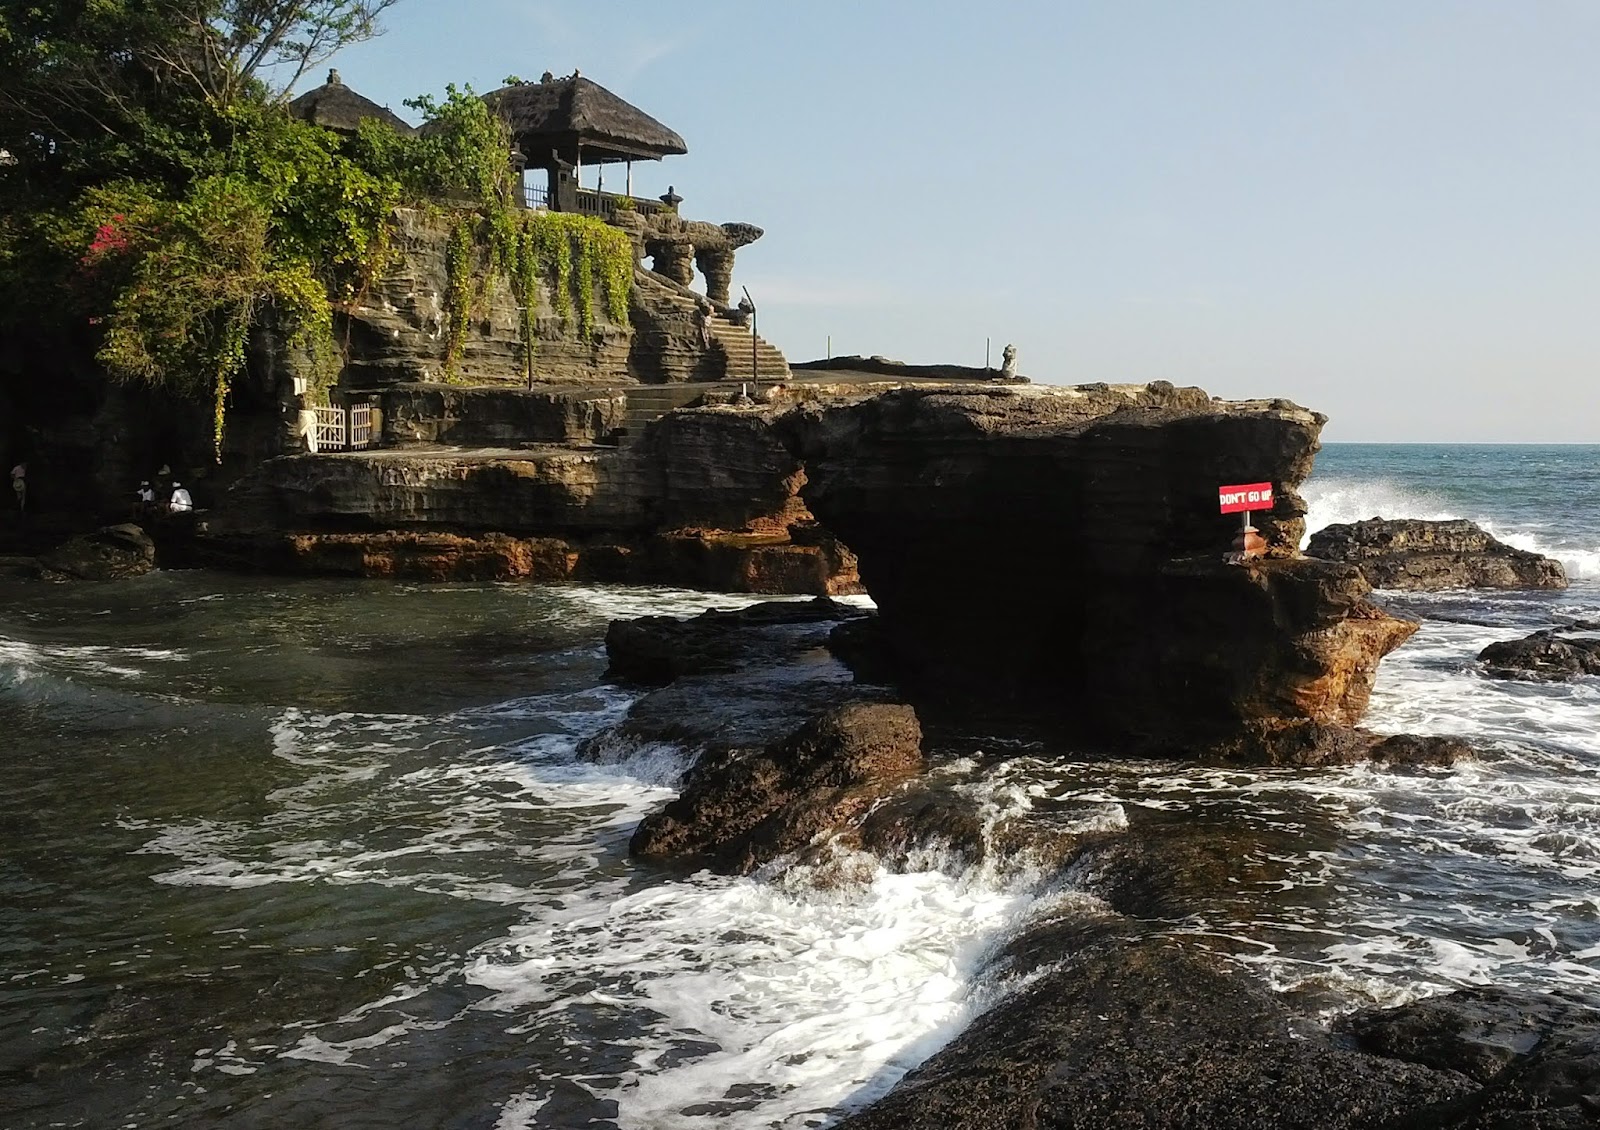 Tempat Wisata Bali Tanah Lot Tempat Wisata Indonesia